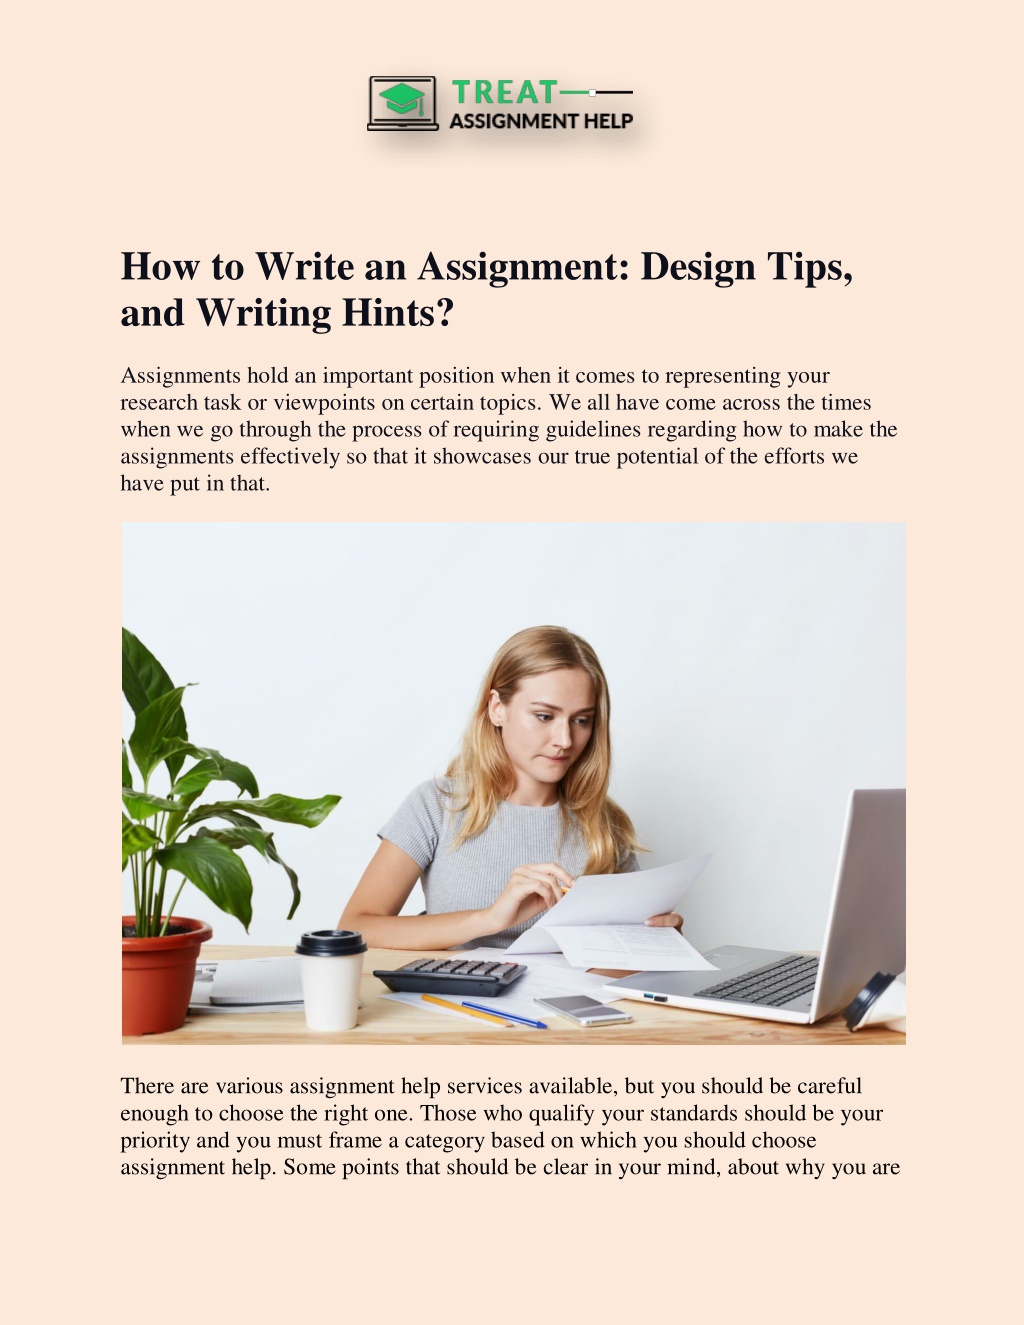 assignment design text